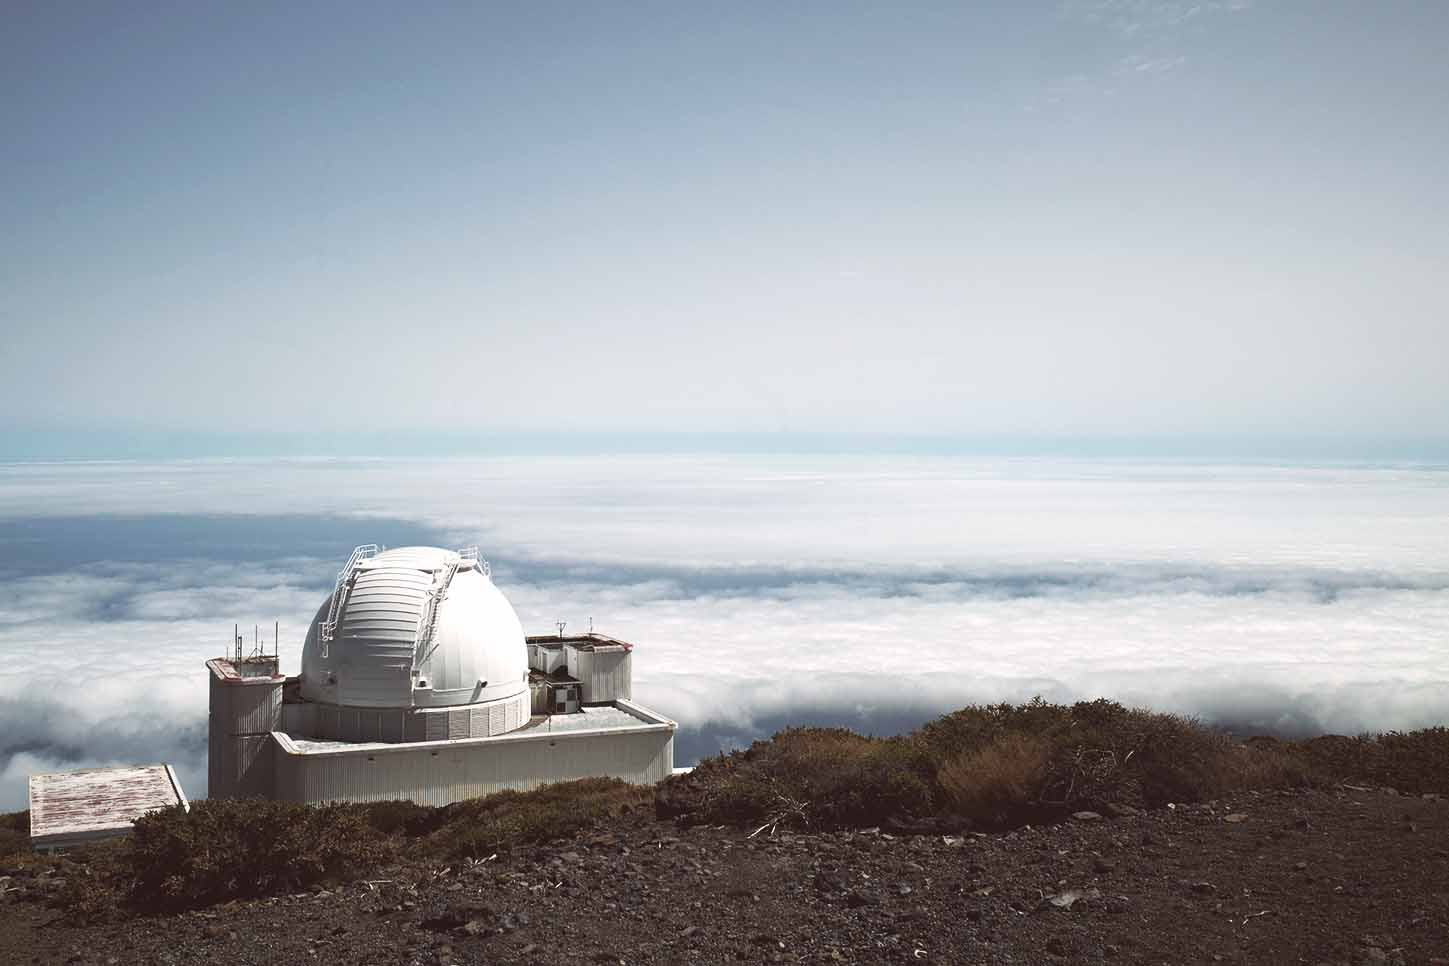 Visite du Teide, de l'observatoire solaire ou de La Palma: c'est là où aller aux Canaries